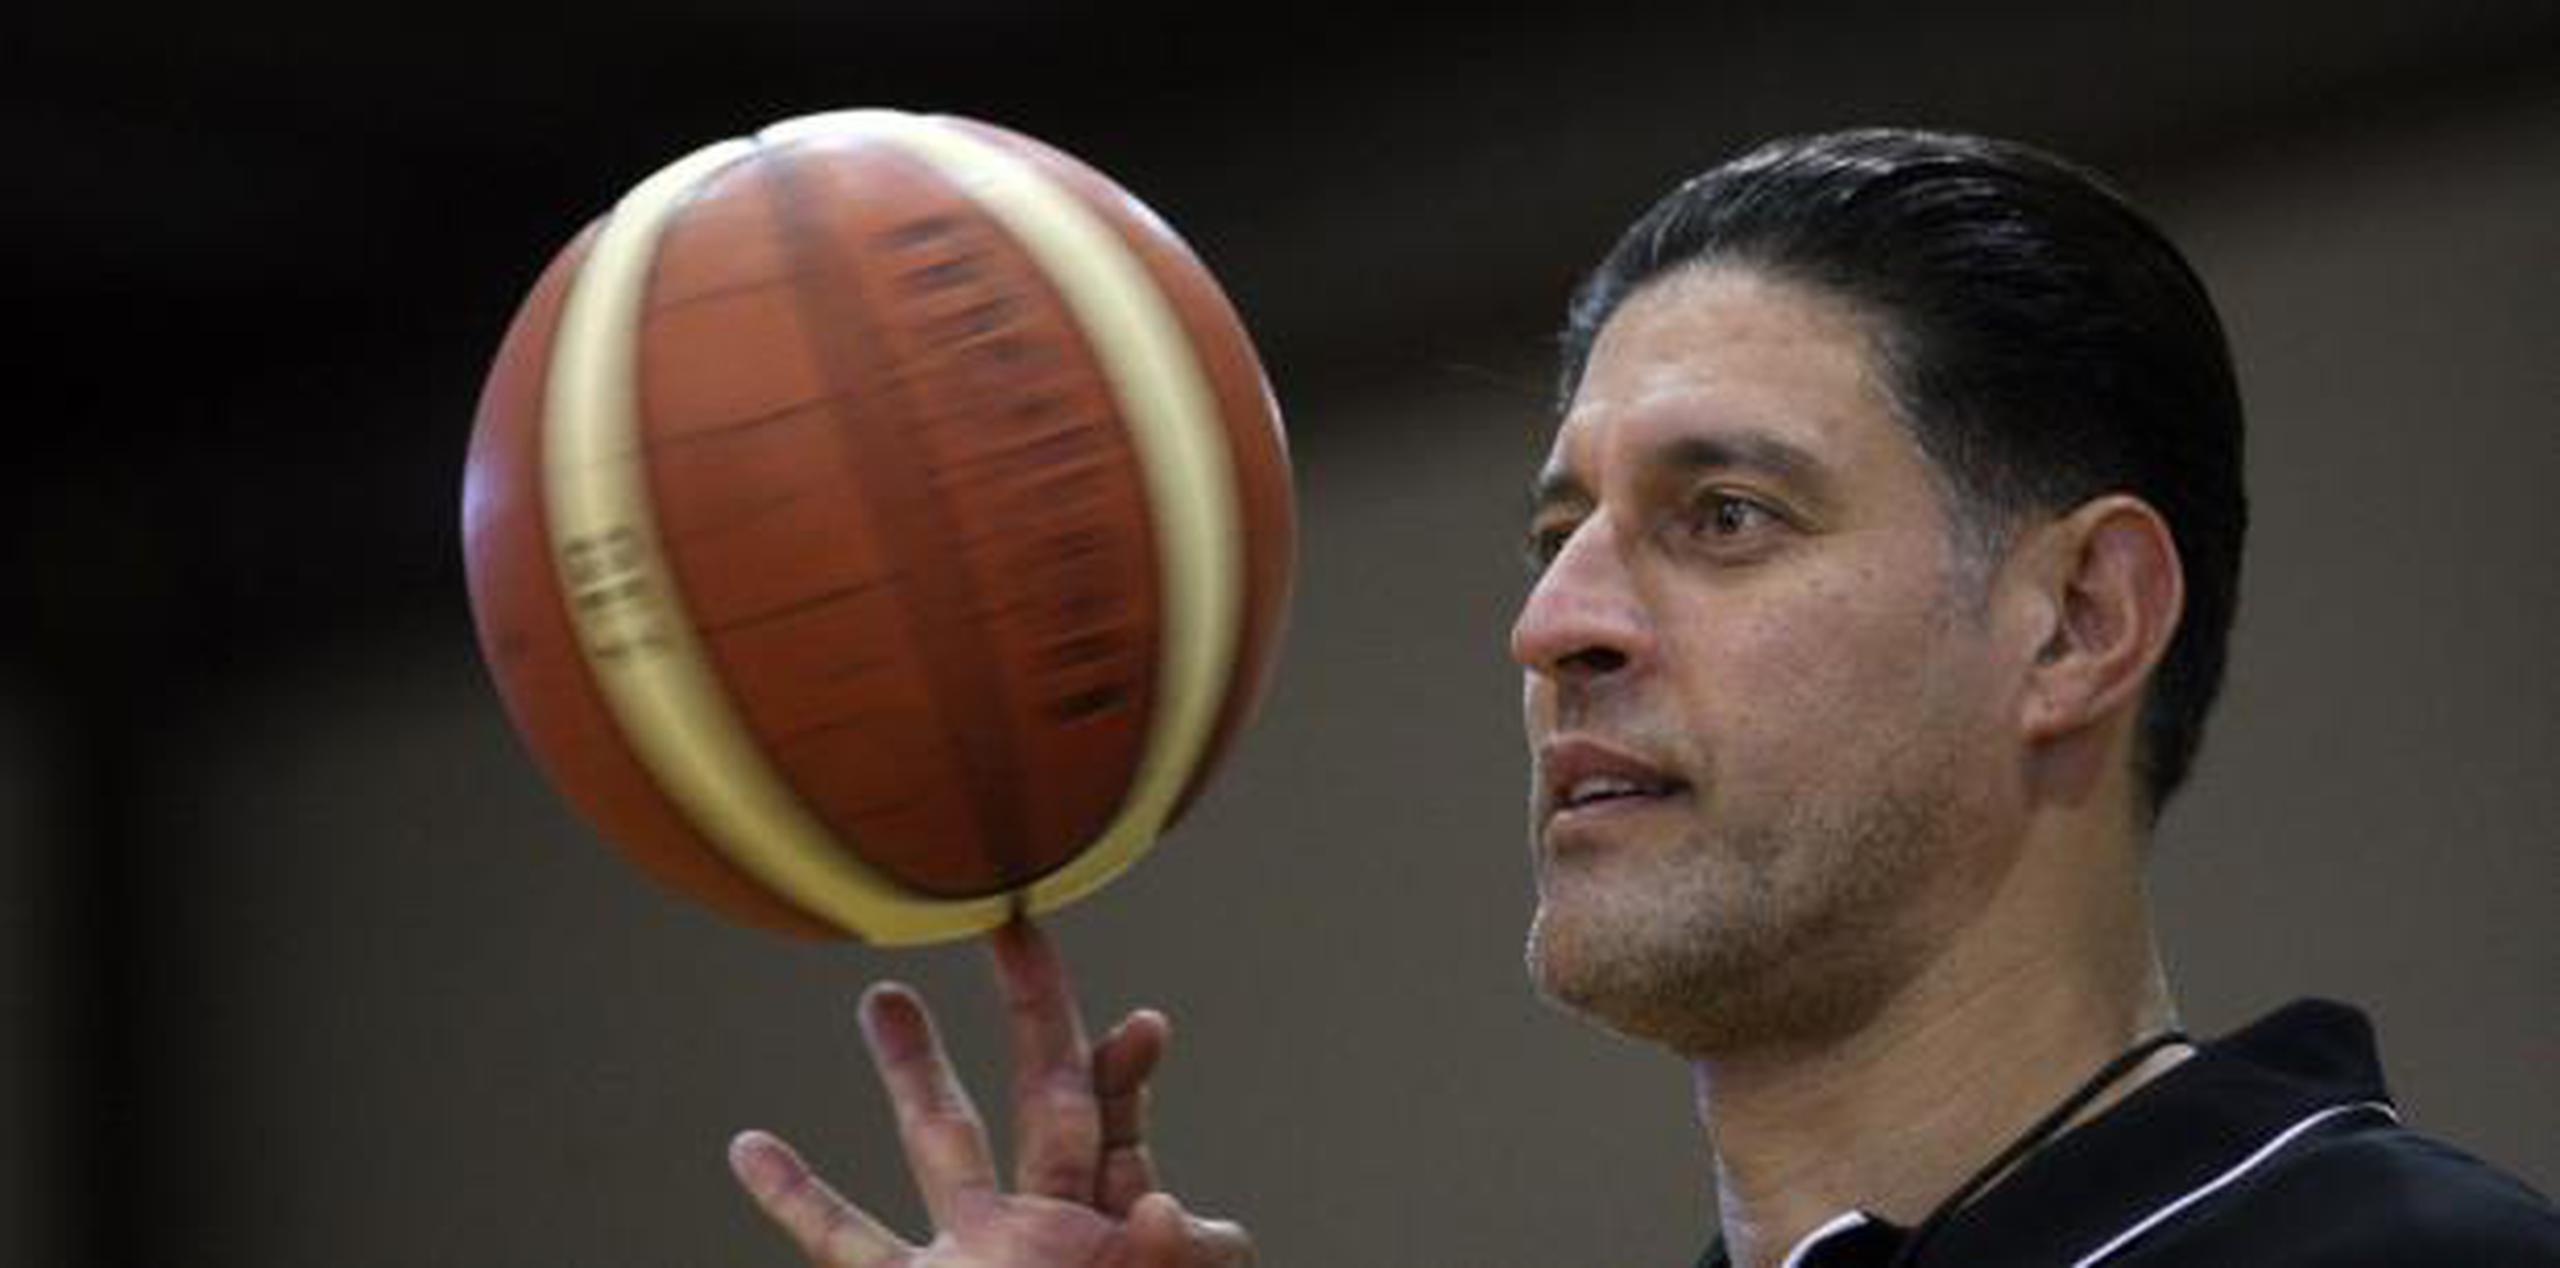 José "Piculín" Ortiz es una de las máximas figuras del baloncesto y el olimpismo boricua. (Archivo)